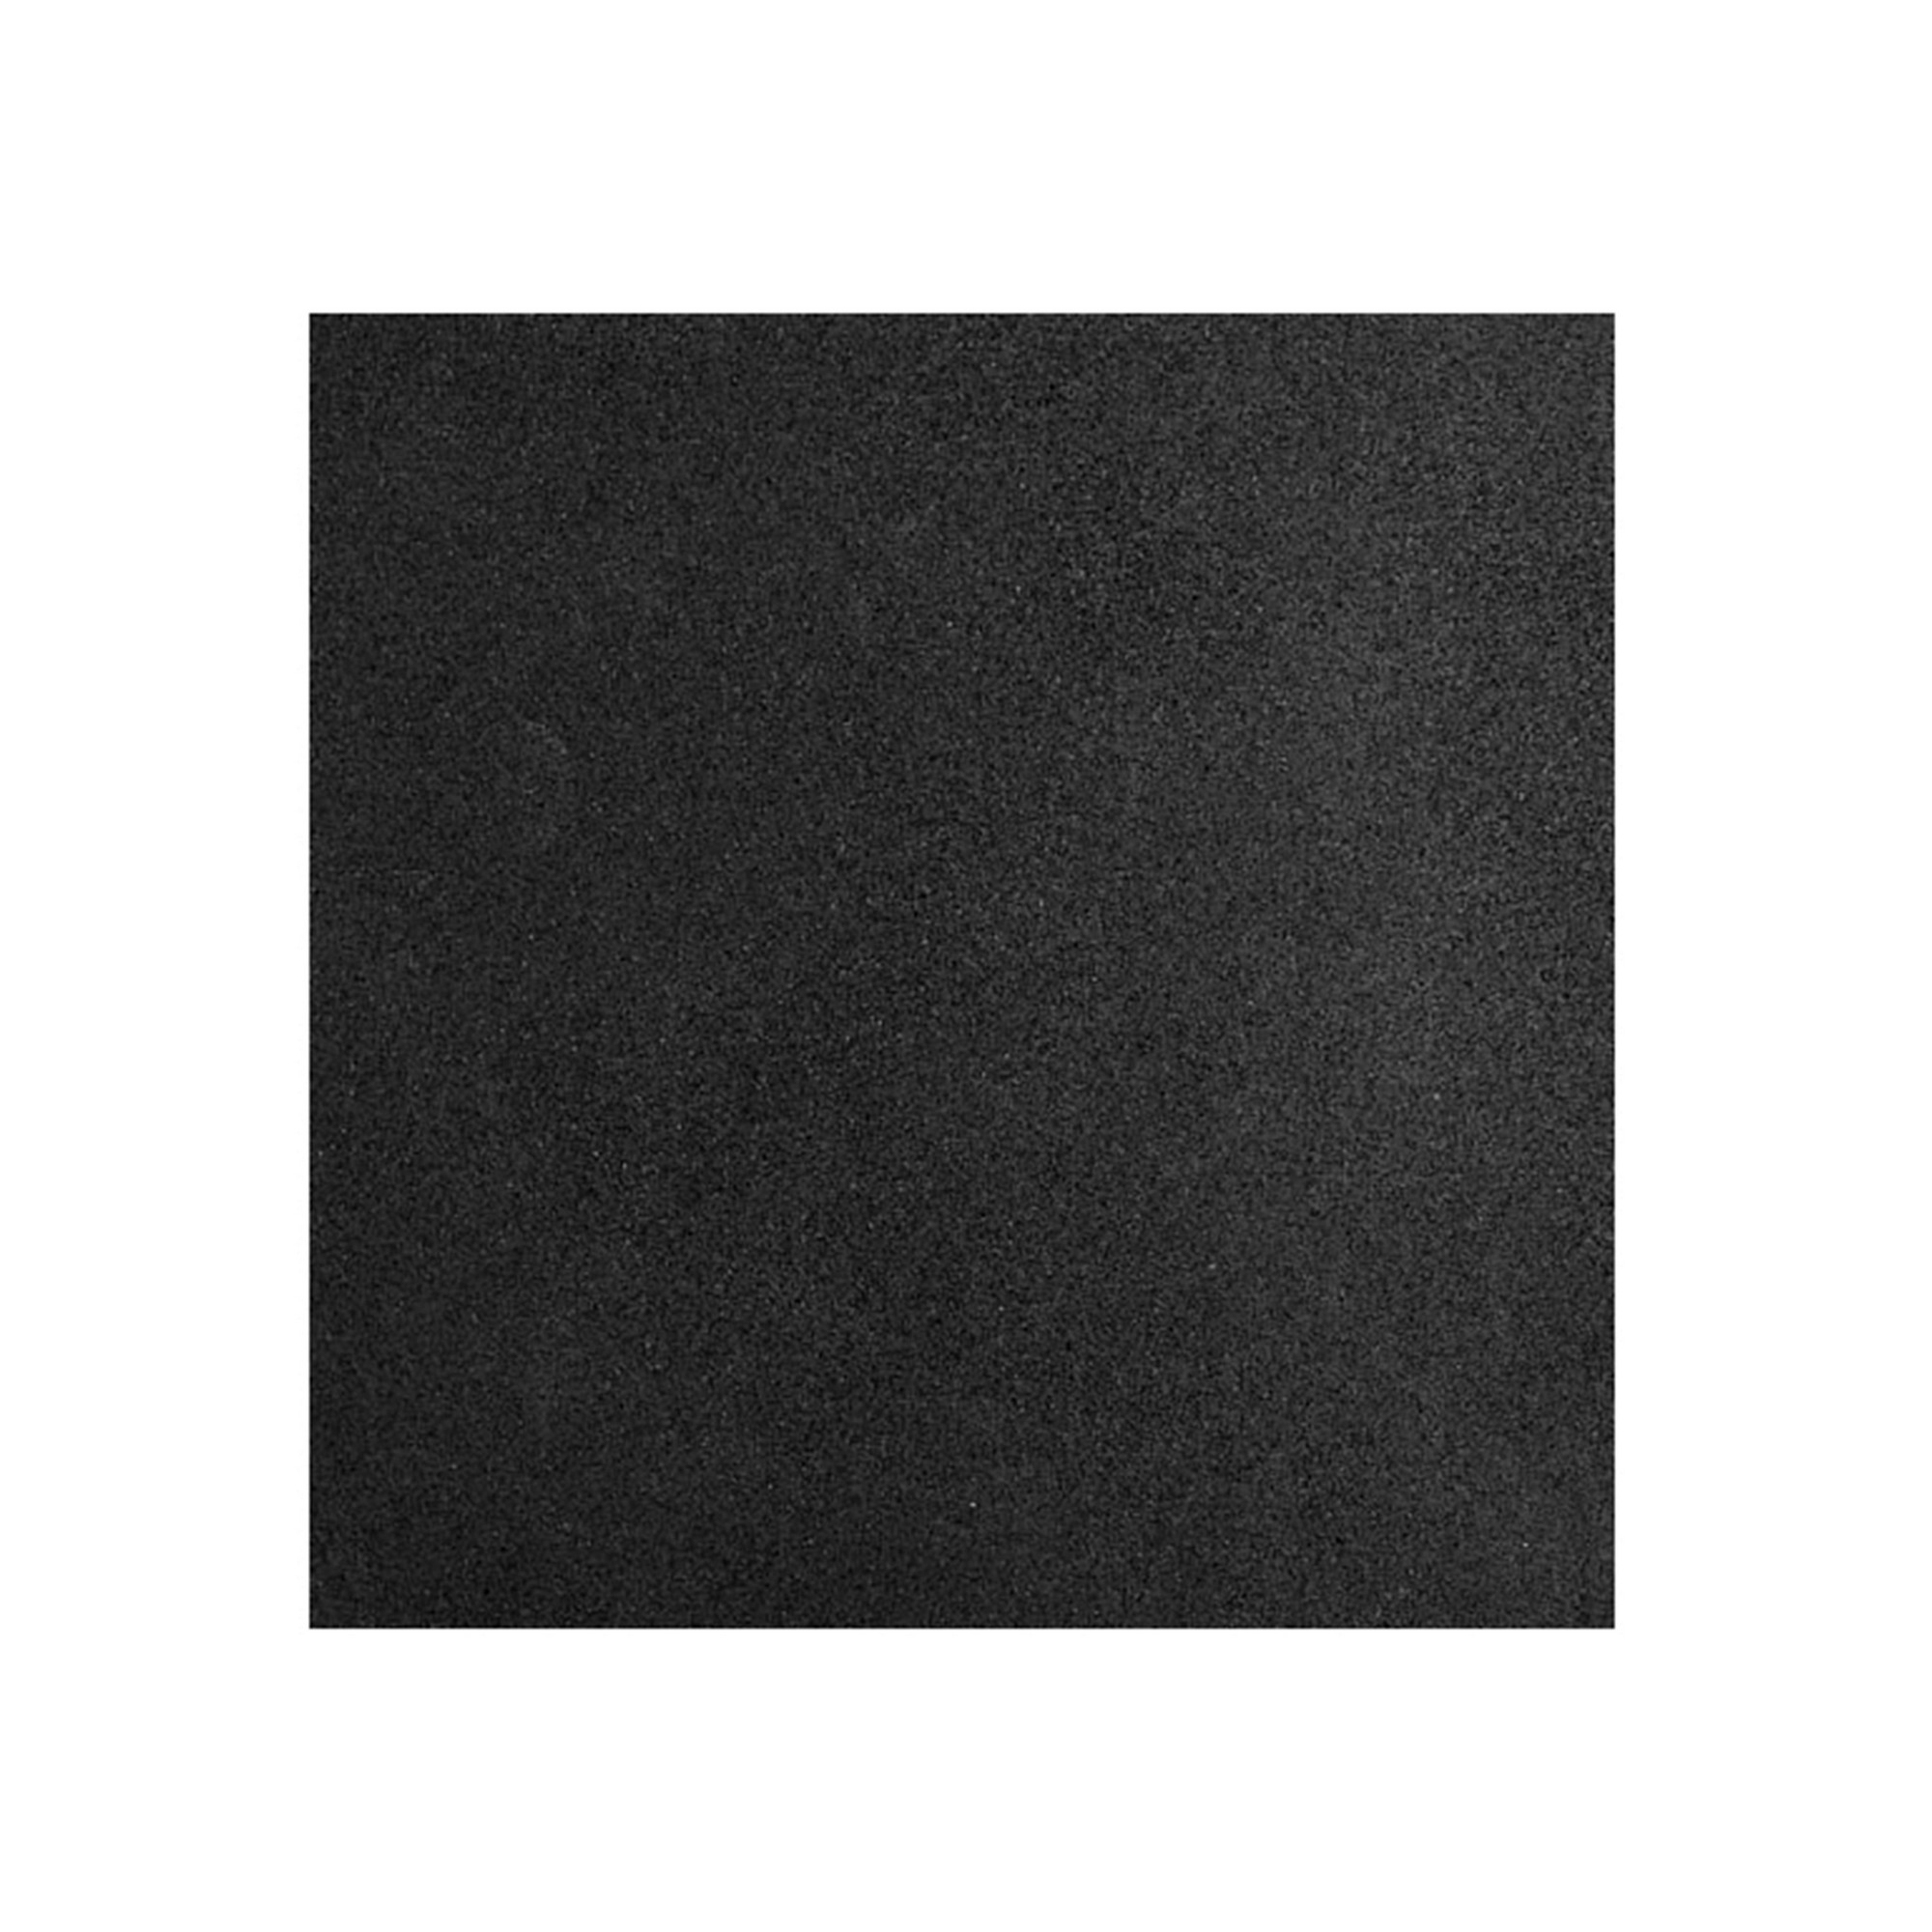 Коврик резиновый Profi-Fit черный,1000x1000x30 мм 2000_2000